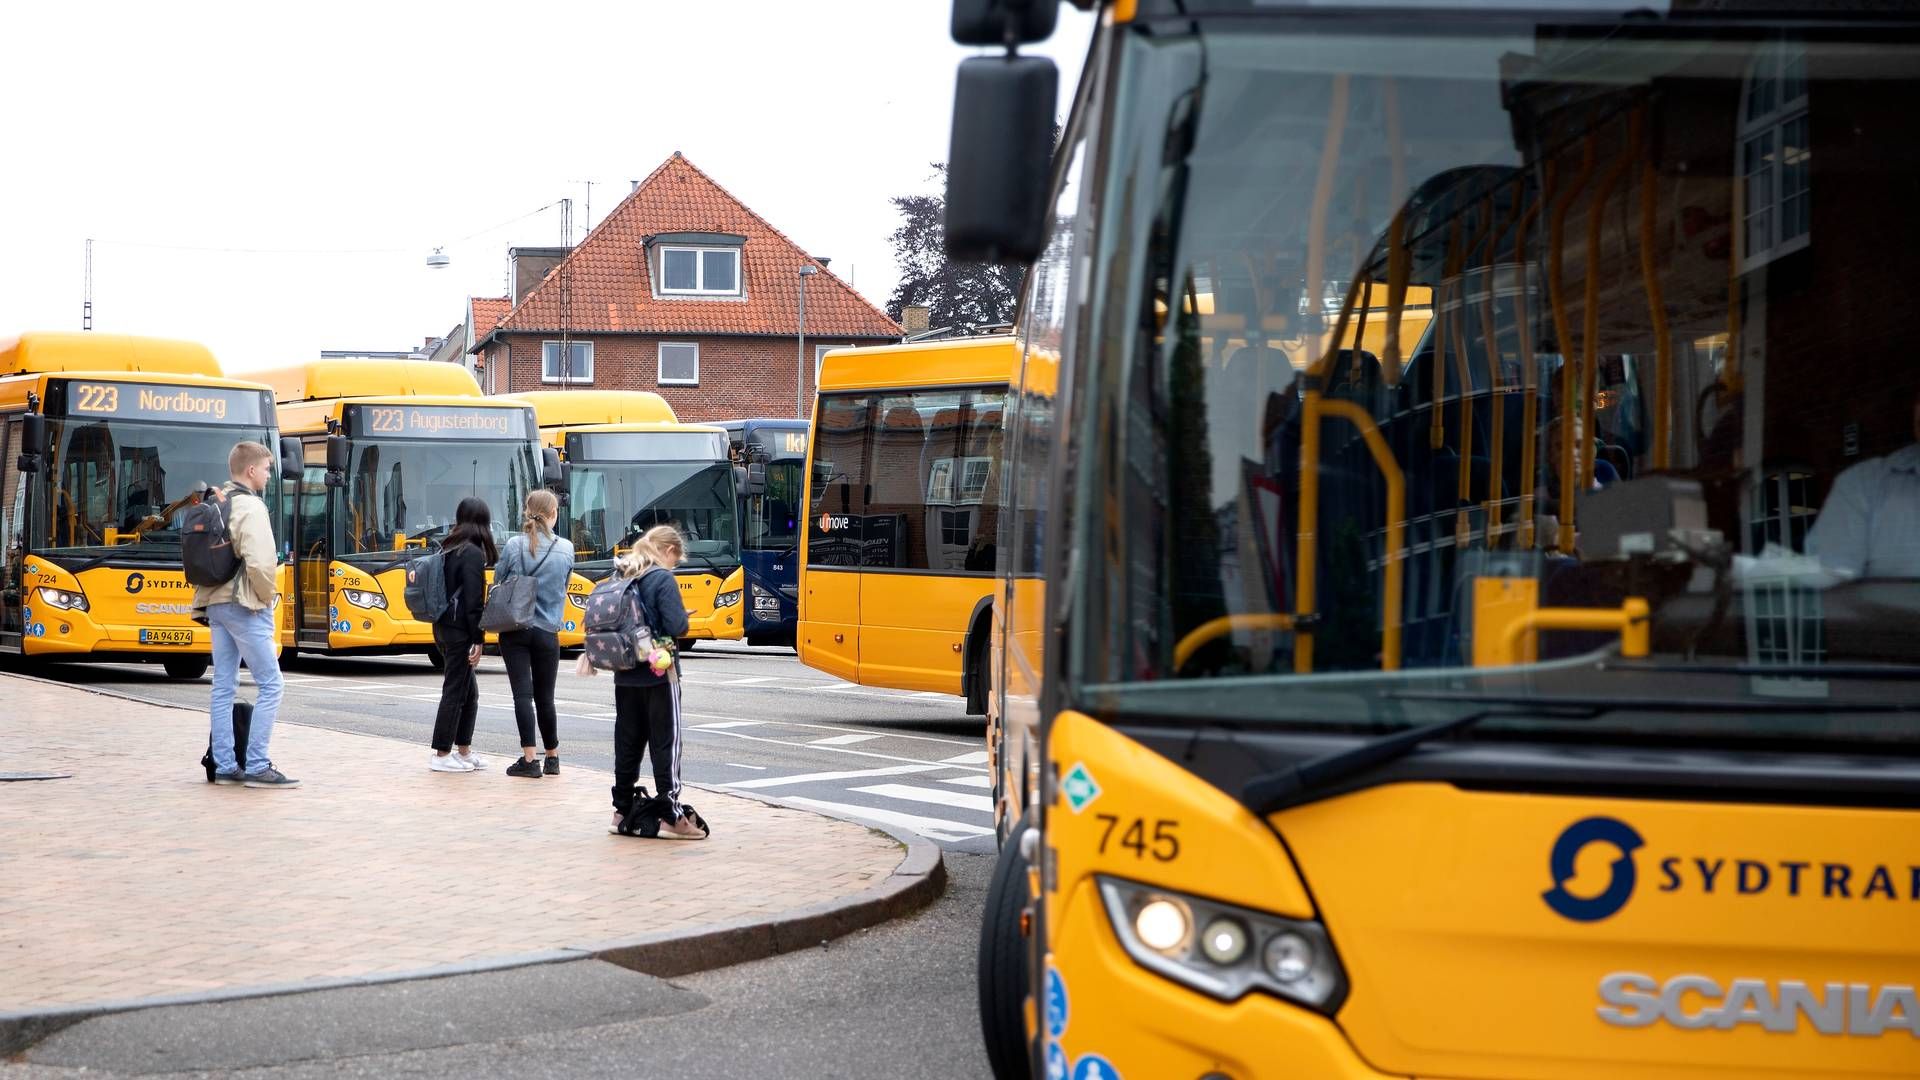 ”Kontantreglen gælder også i busserne," slår forbrugerombudsmanden Christina Toftegaard Nielsen fast. | Foto: Finn Frandsen/Ritzau Scanpix